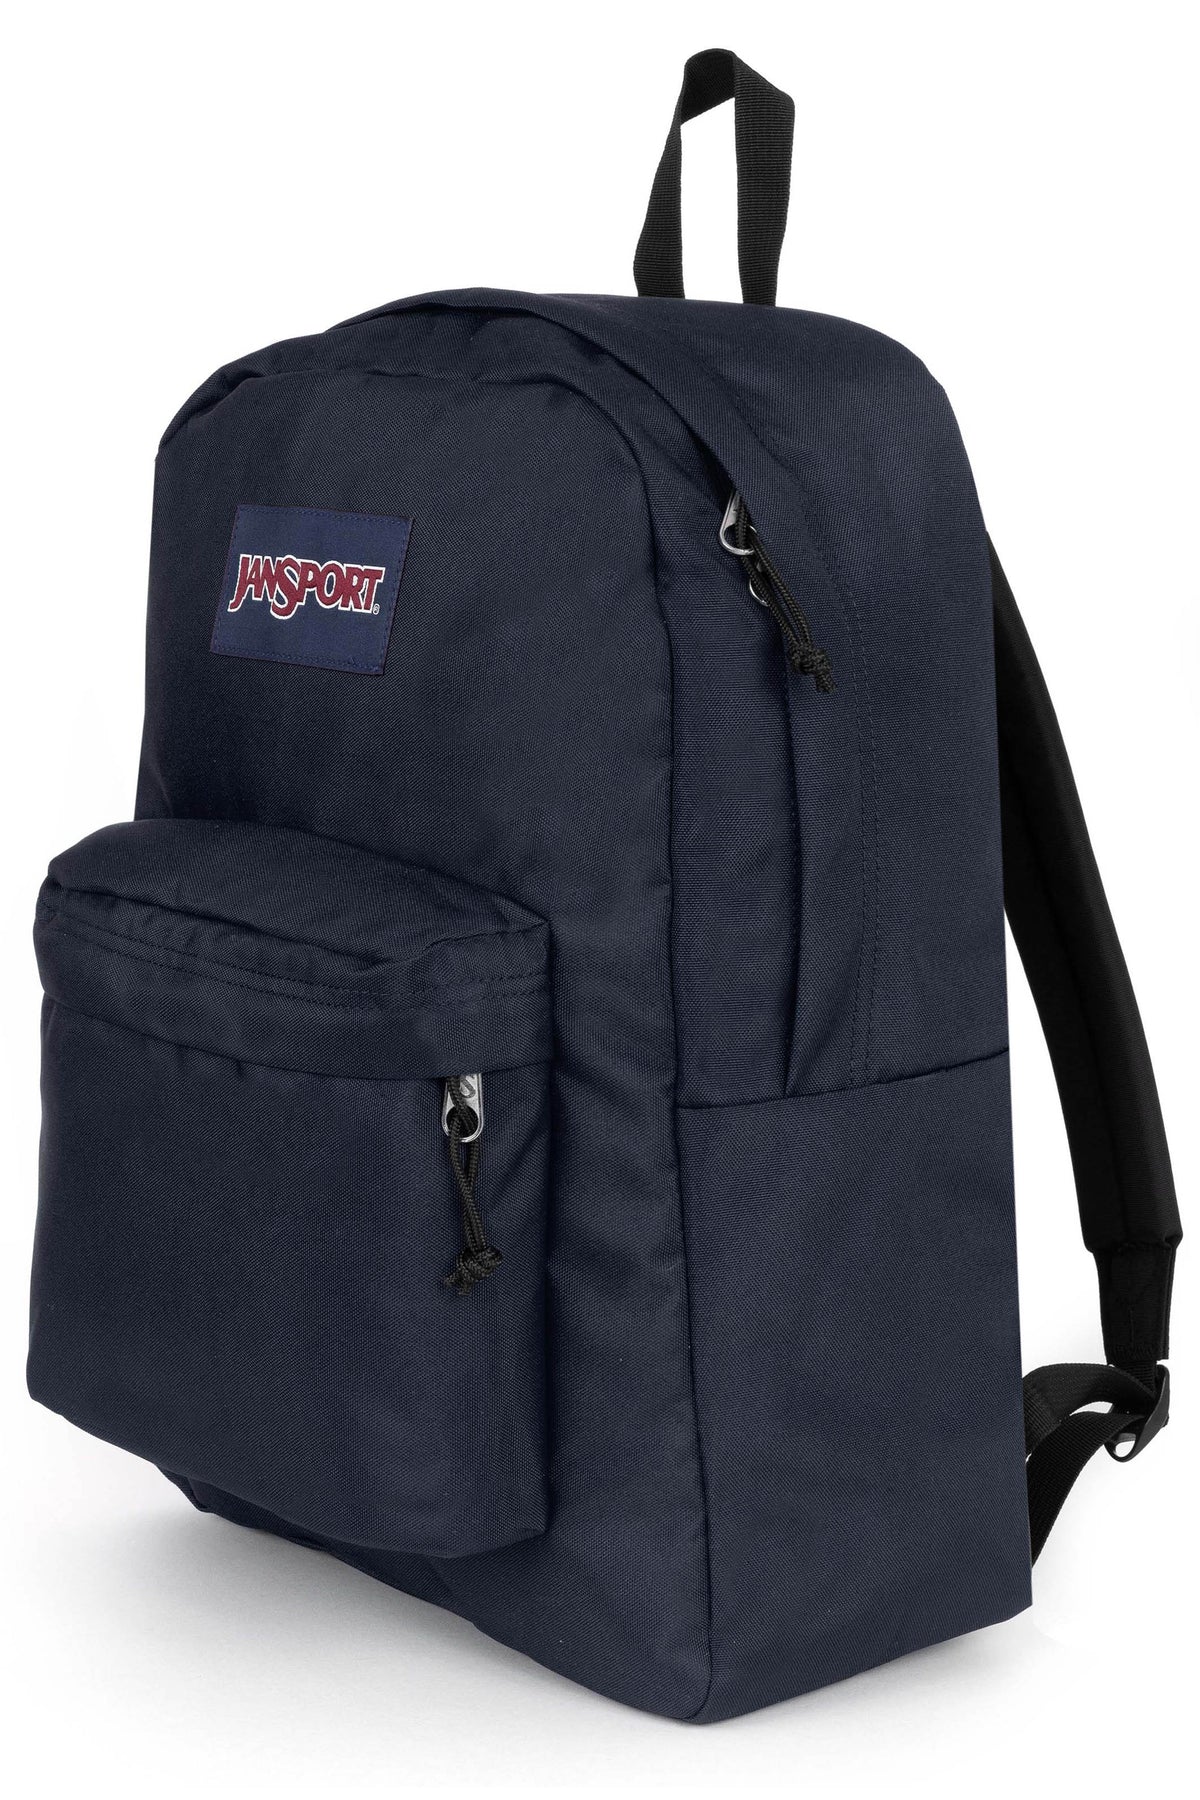 Jansport Superbreak One Backpack - Navy